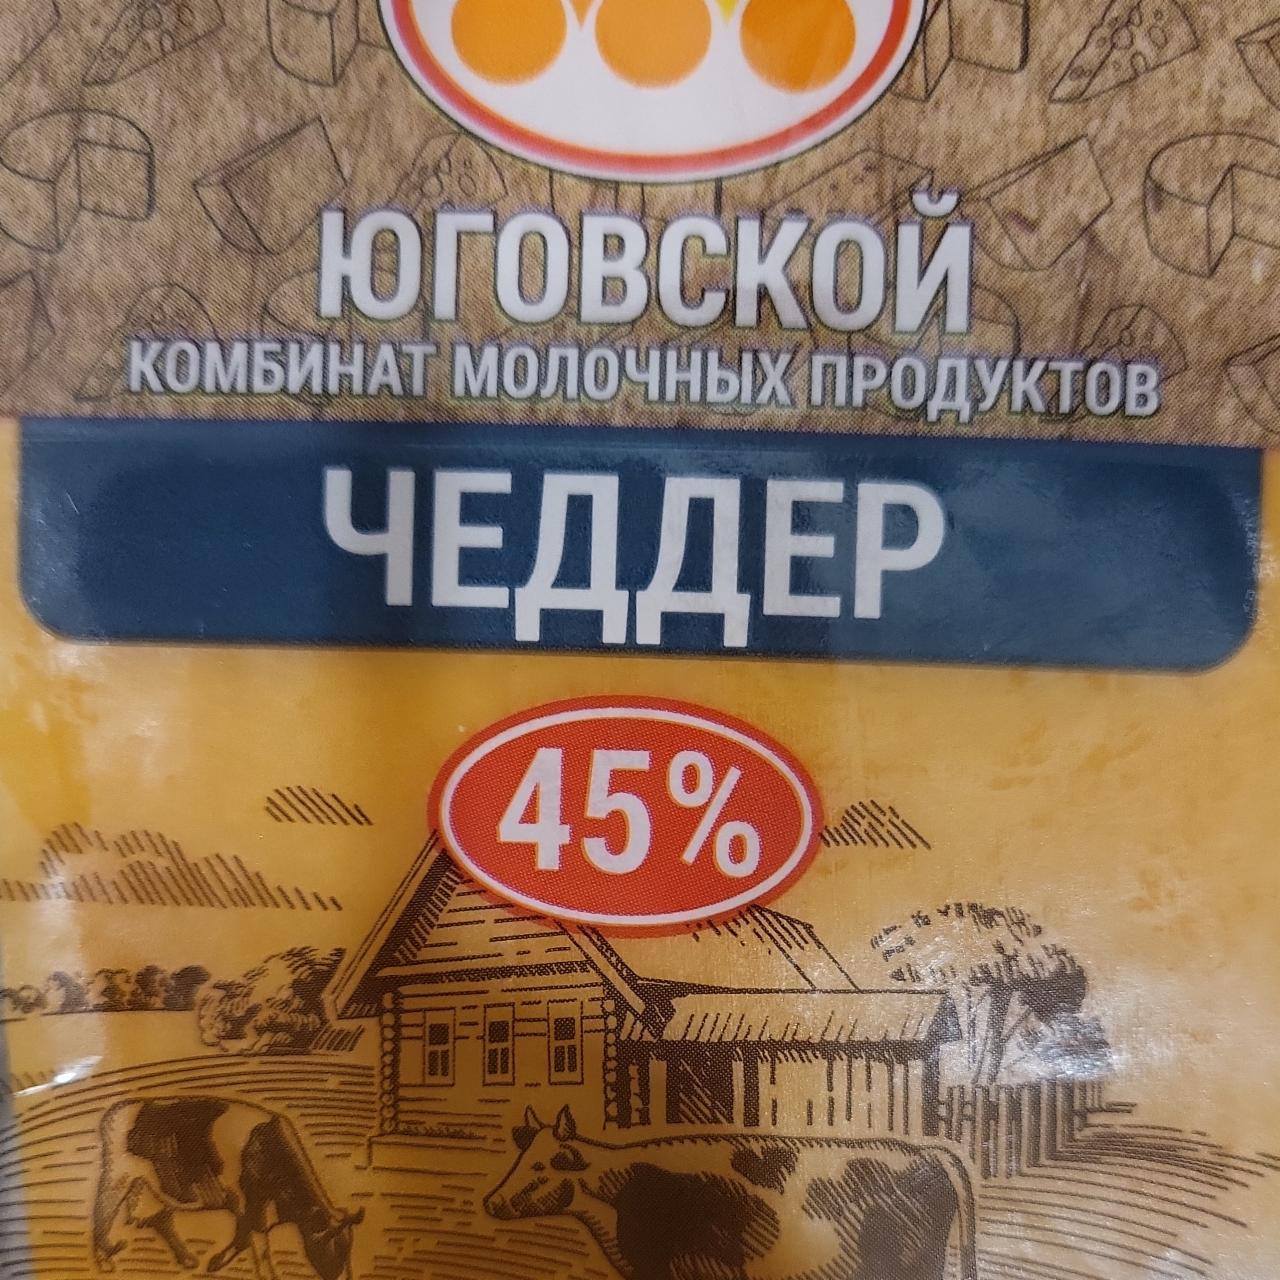 Фото - Сыр Чеддер 45% Юговской комбинат молочных продуктов